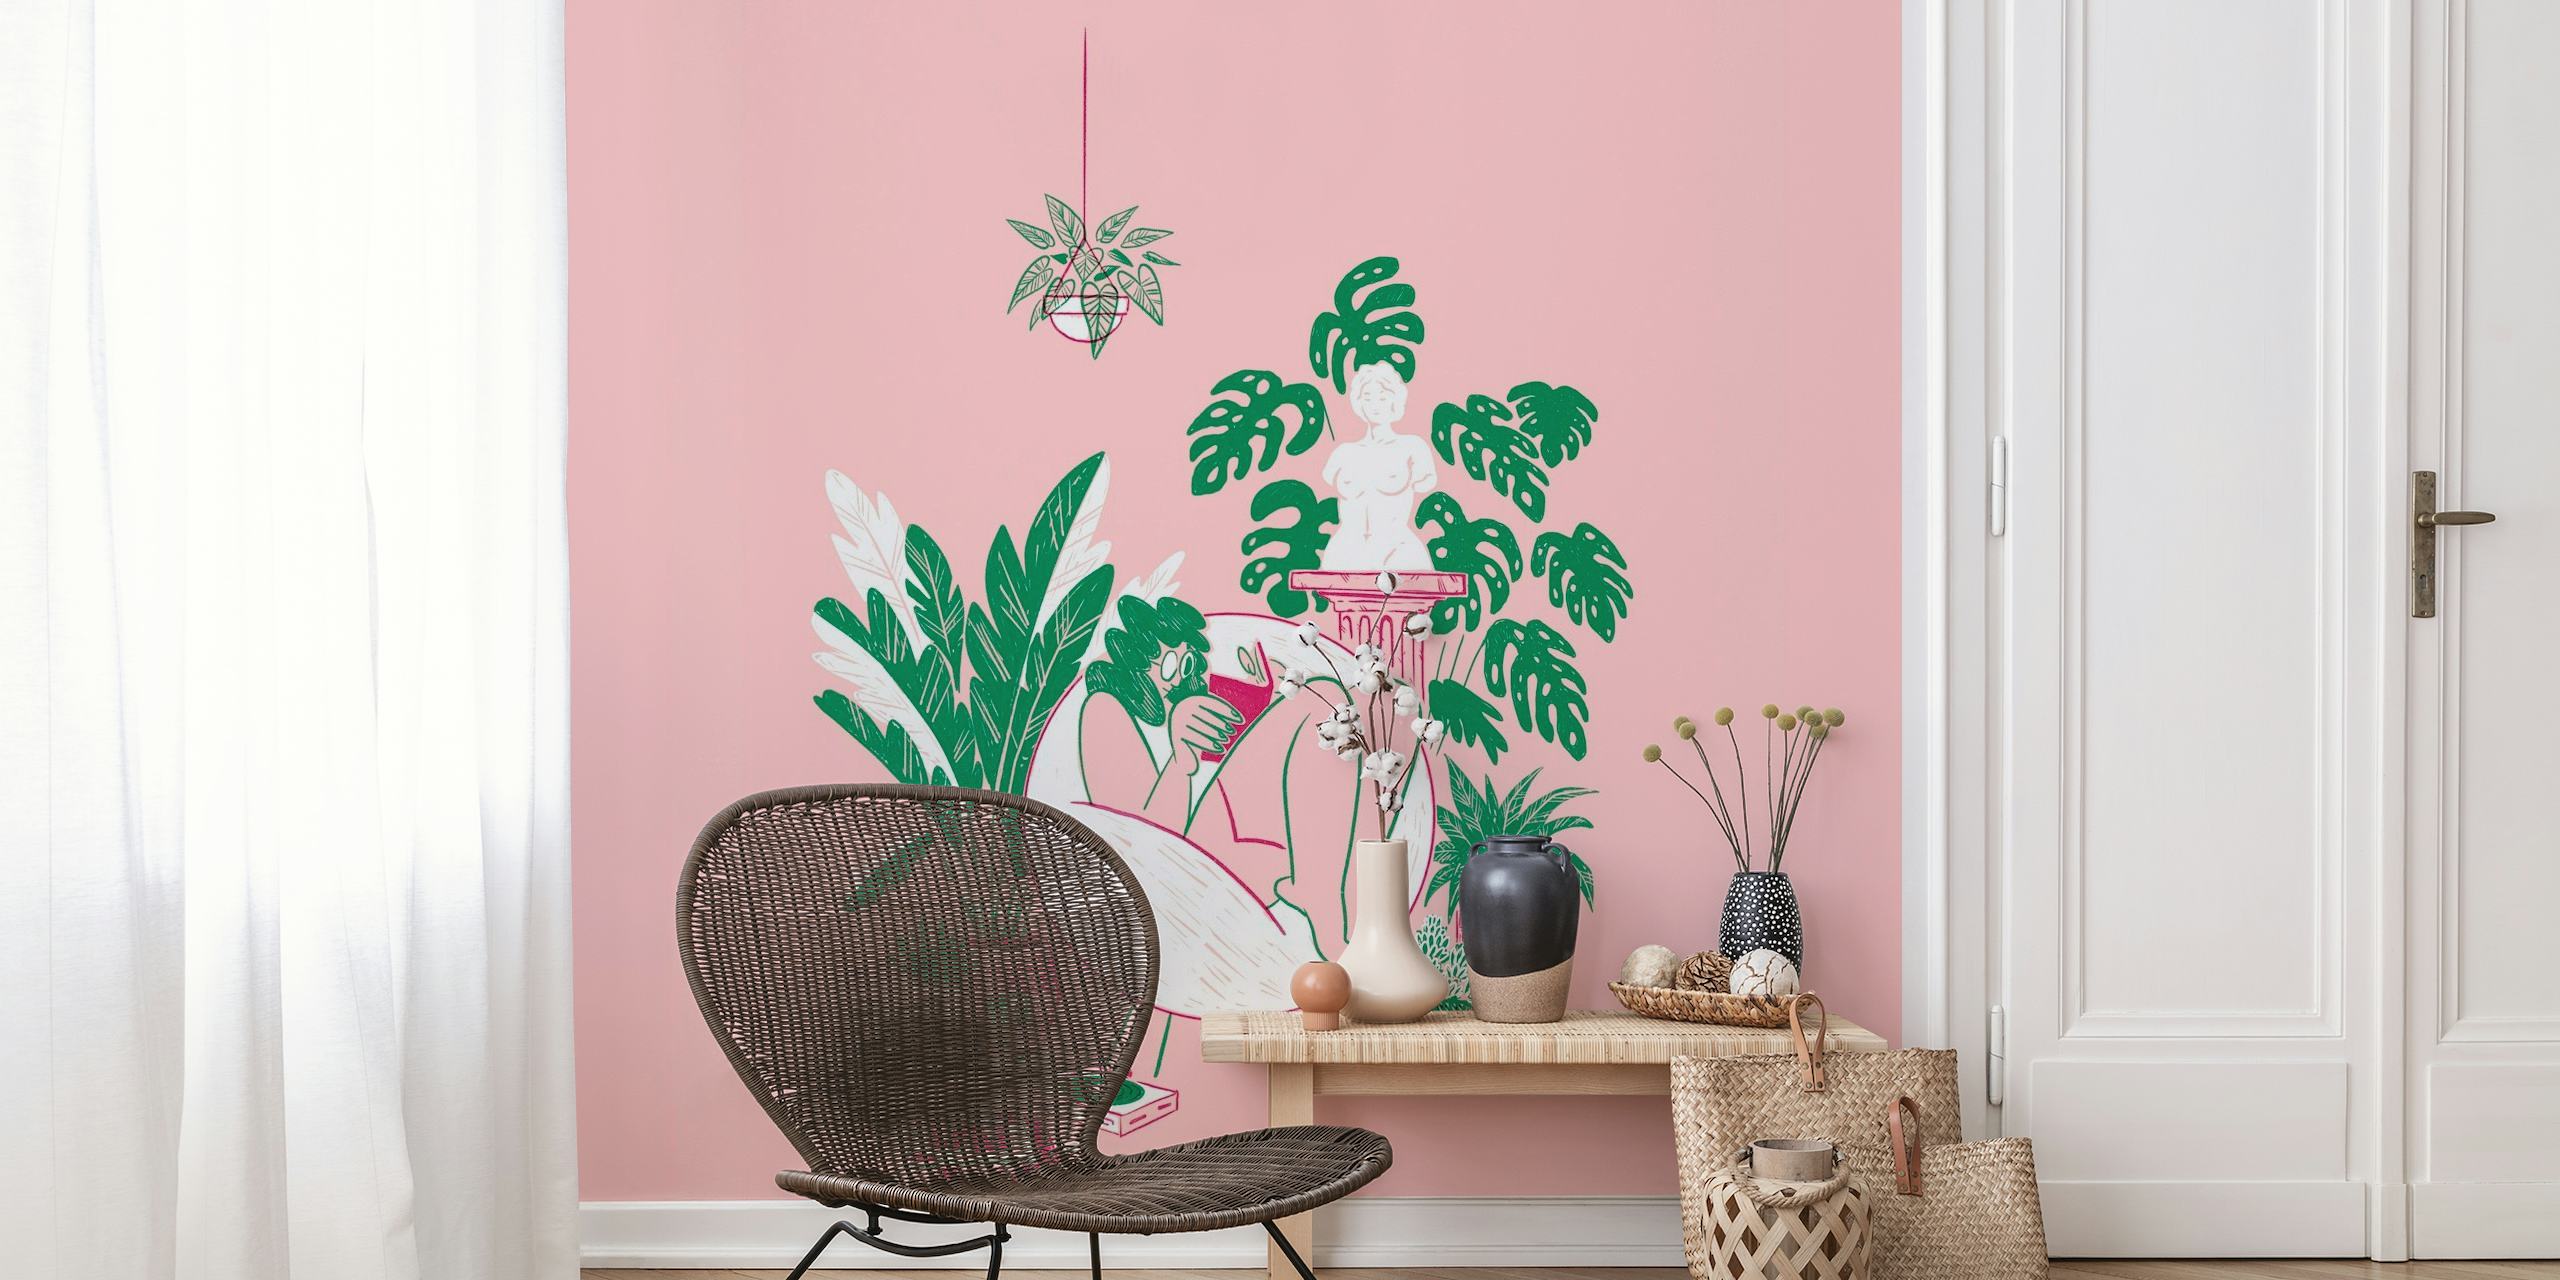 Illustrasjon av person omgitt av potteplanter på rosa bakgrunn, som fanger en rolig innendørs hagescene.